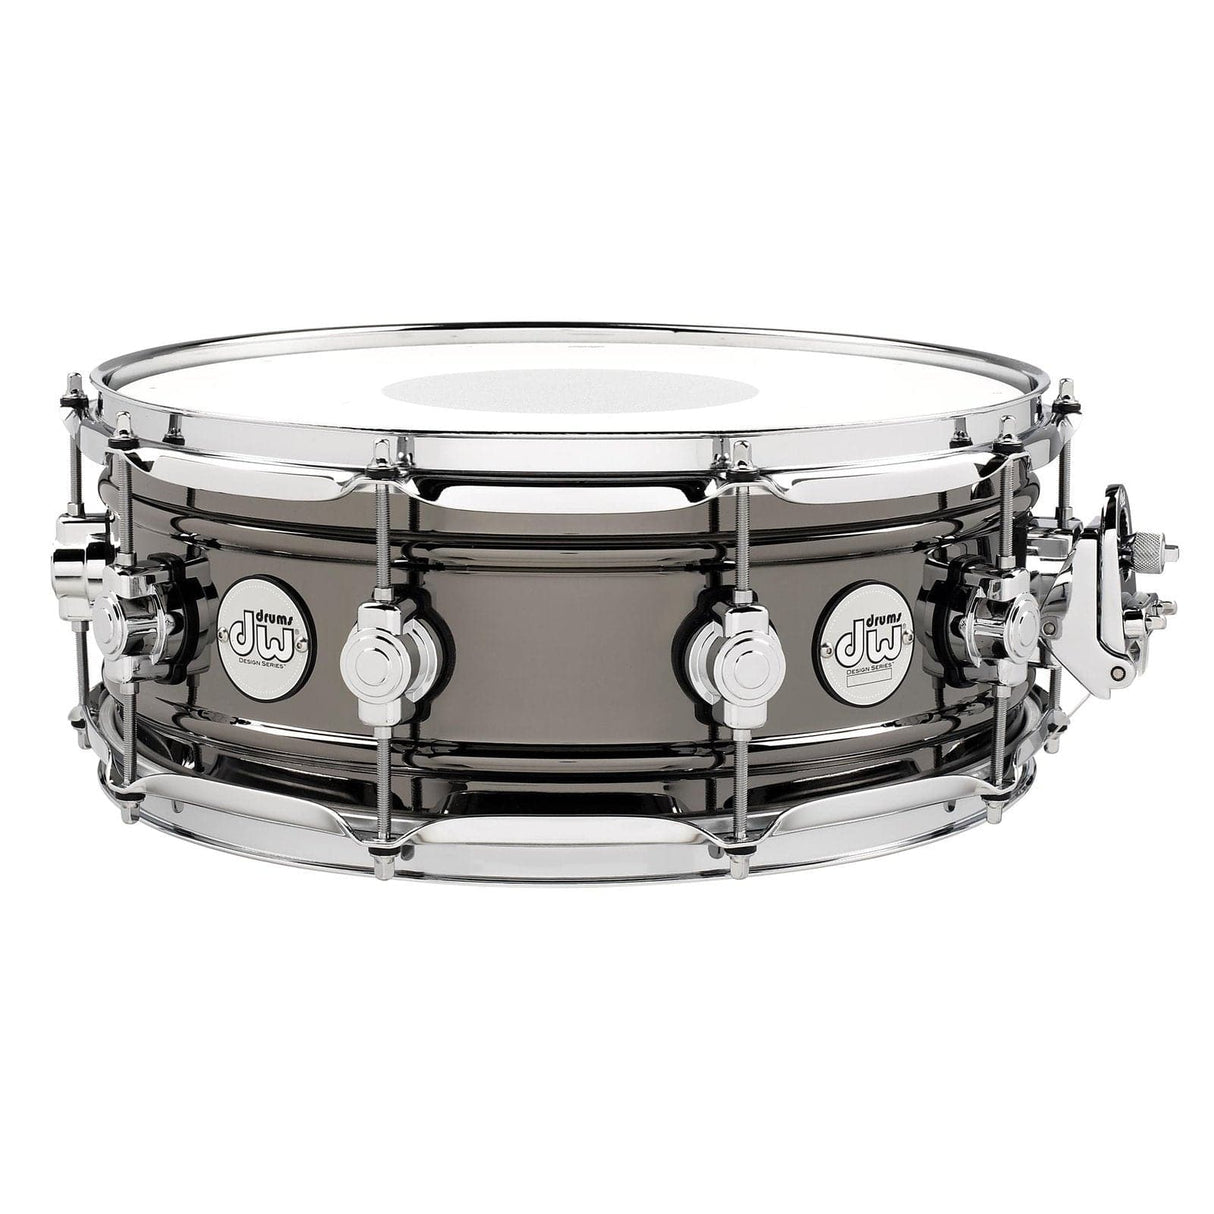 DW Design Black Nickel Over Brass Snare Drum 14x5.5